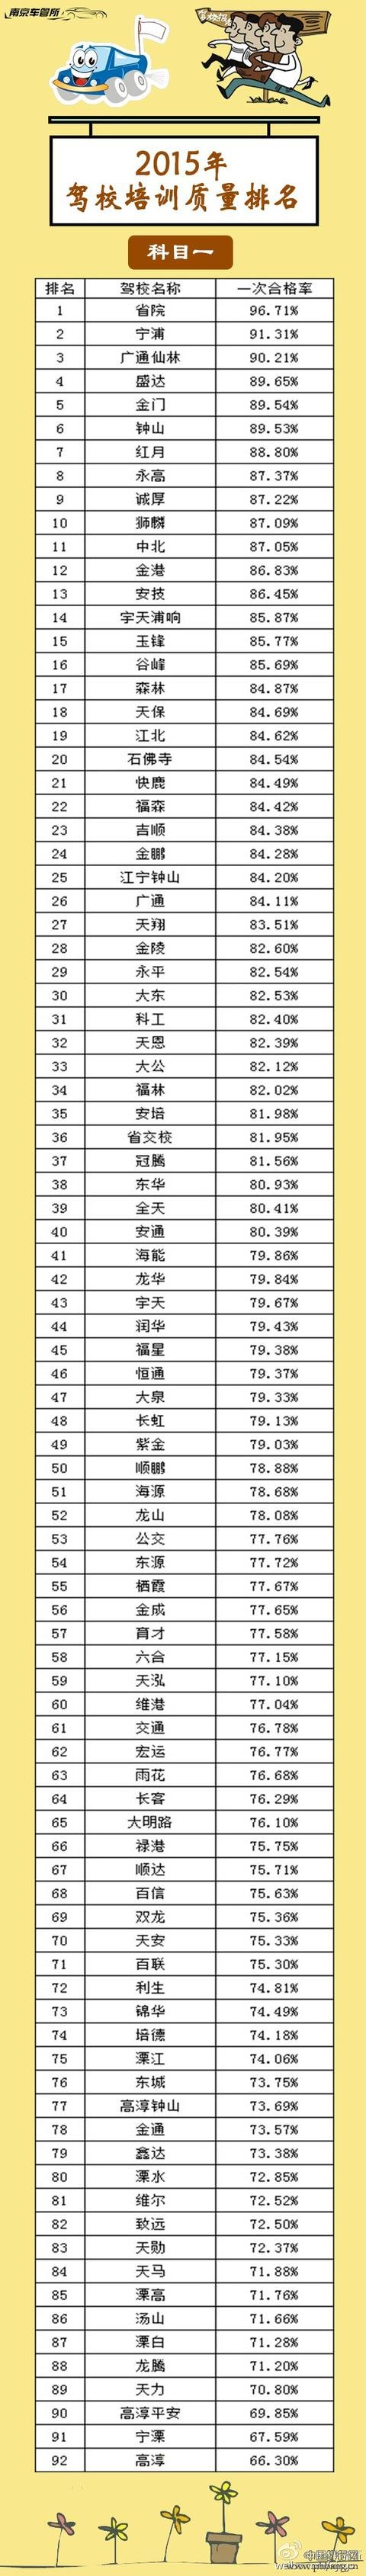 2015年南京驾校培训质量排名